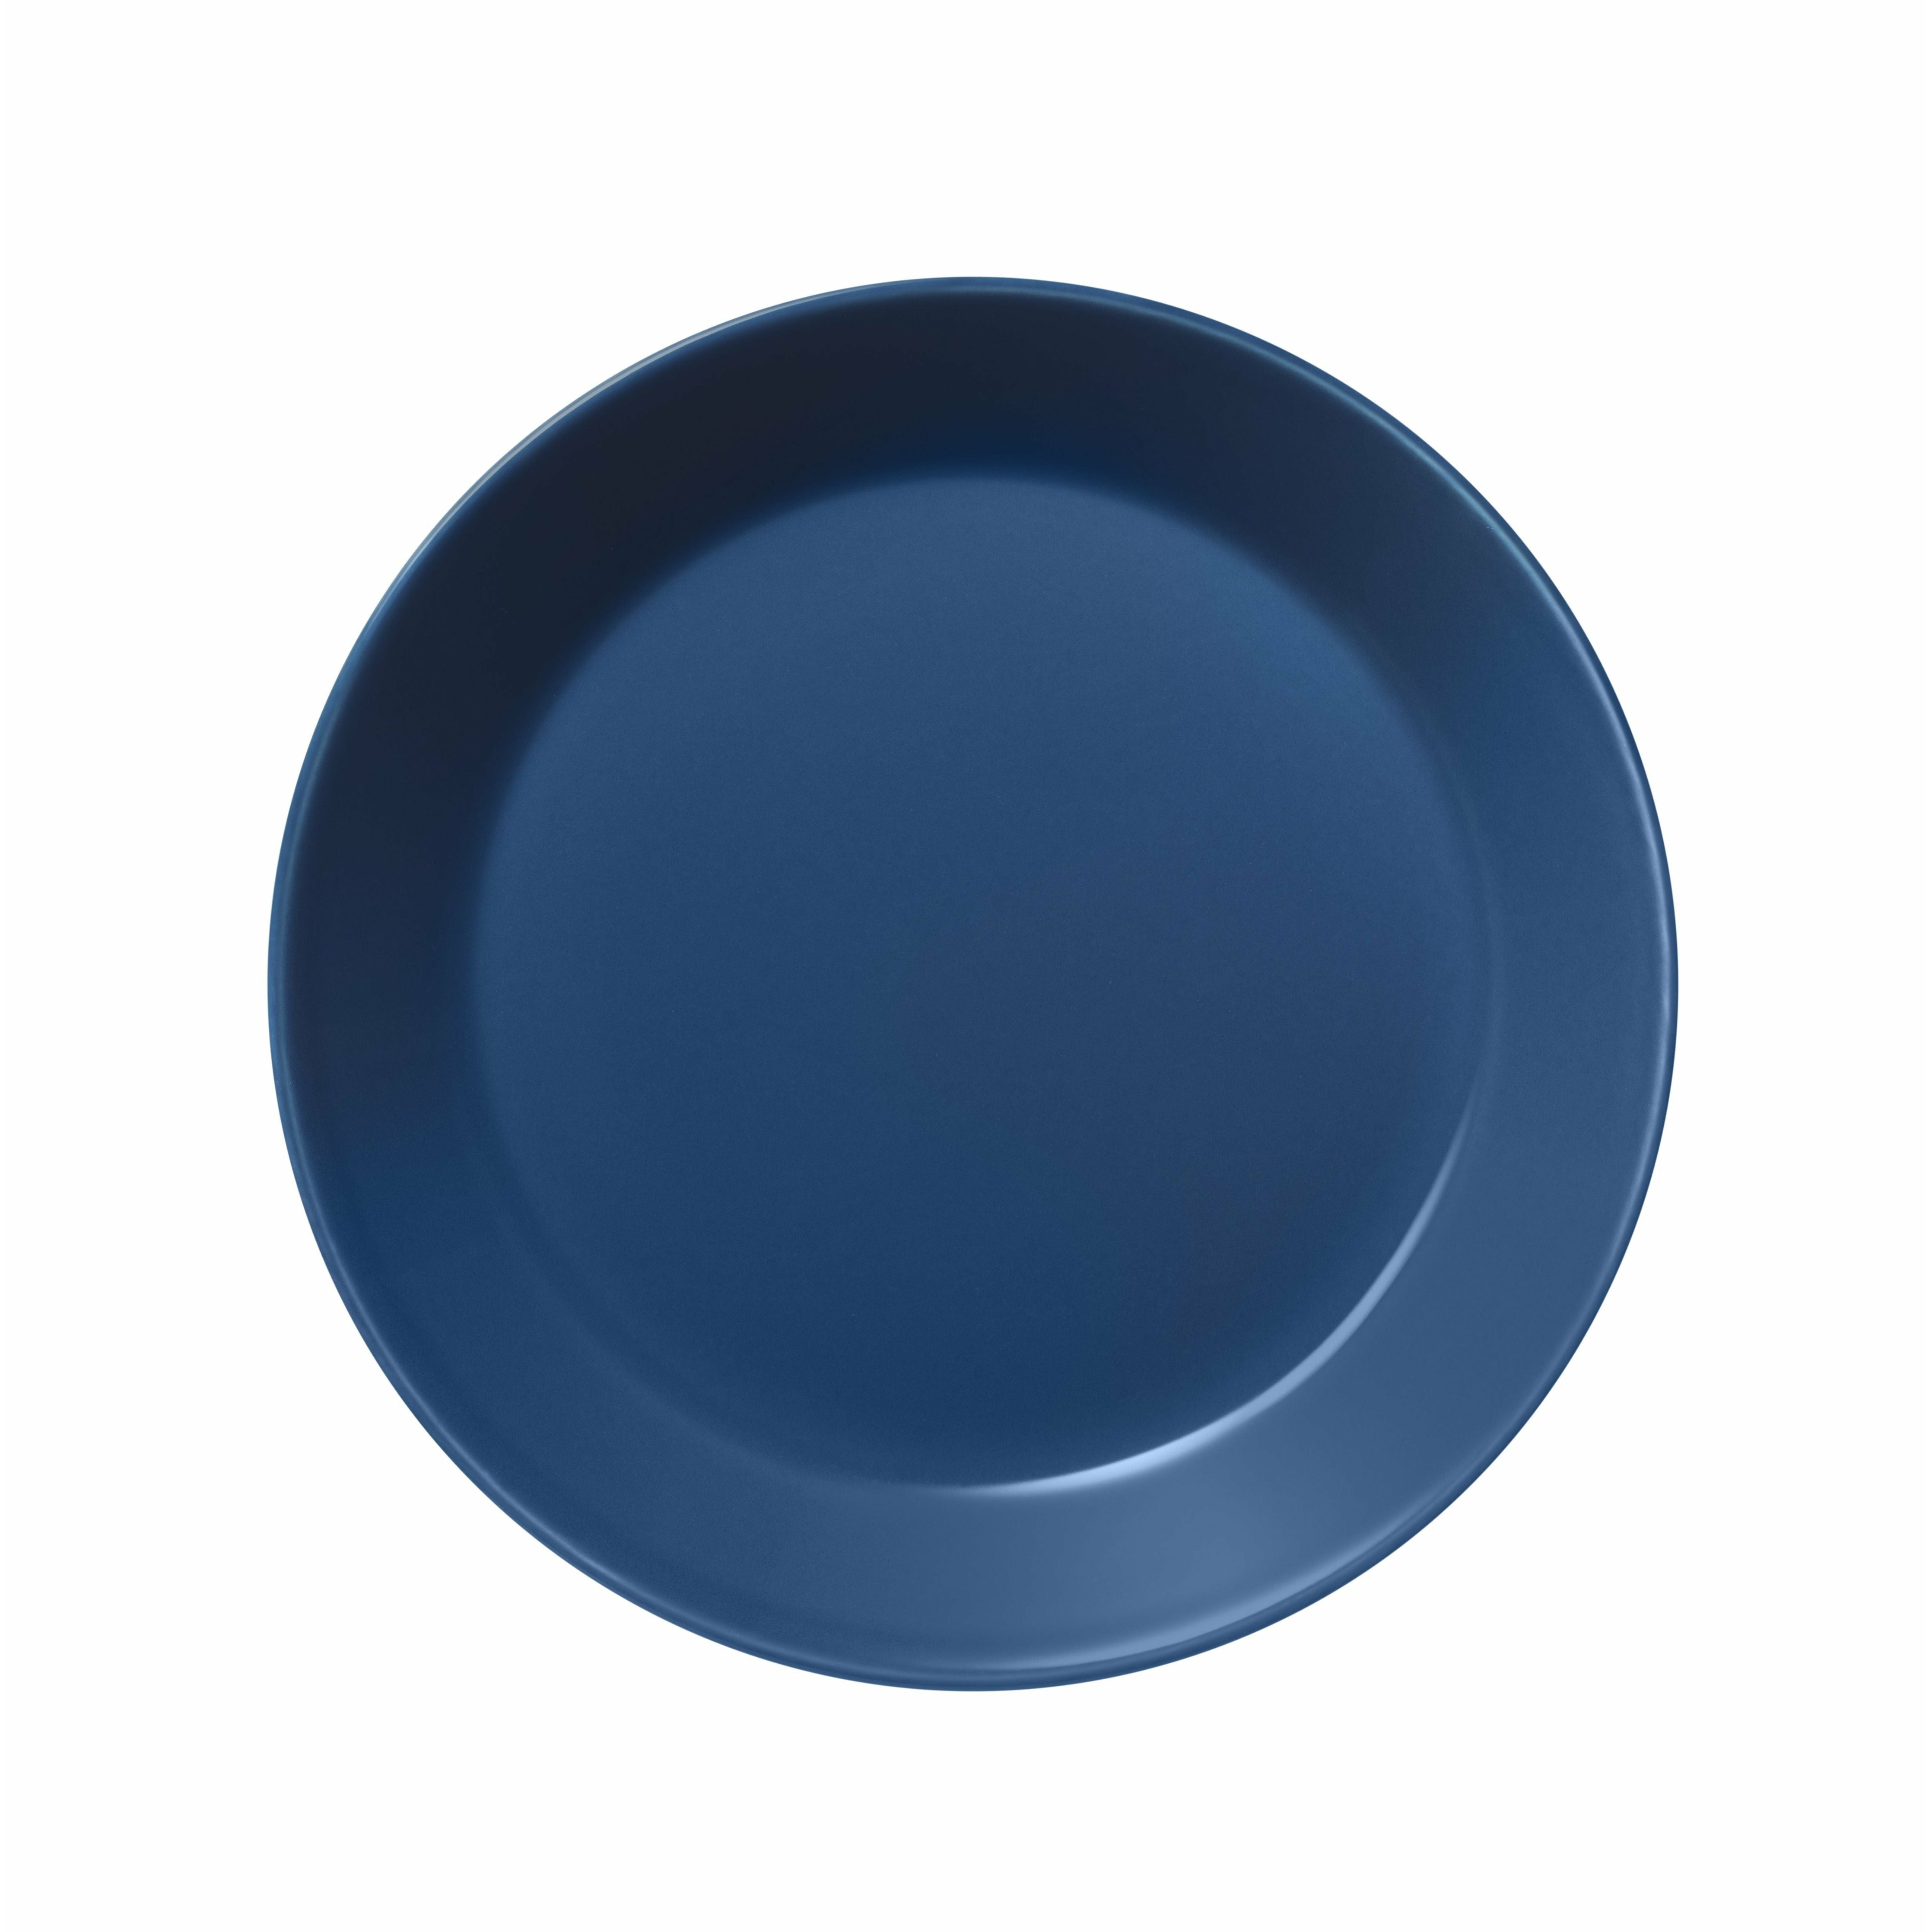 Iittala Teema Plate 17cm, azul vintage